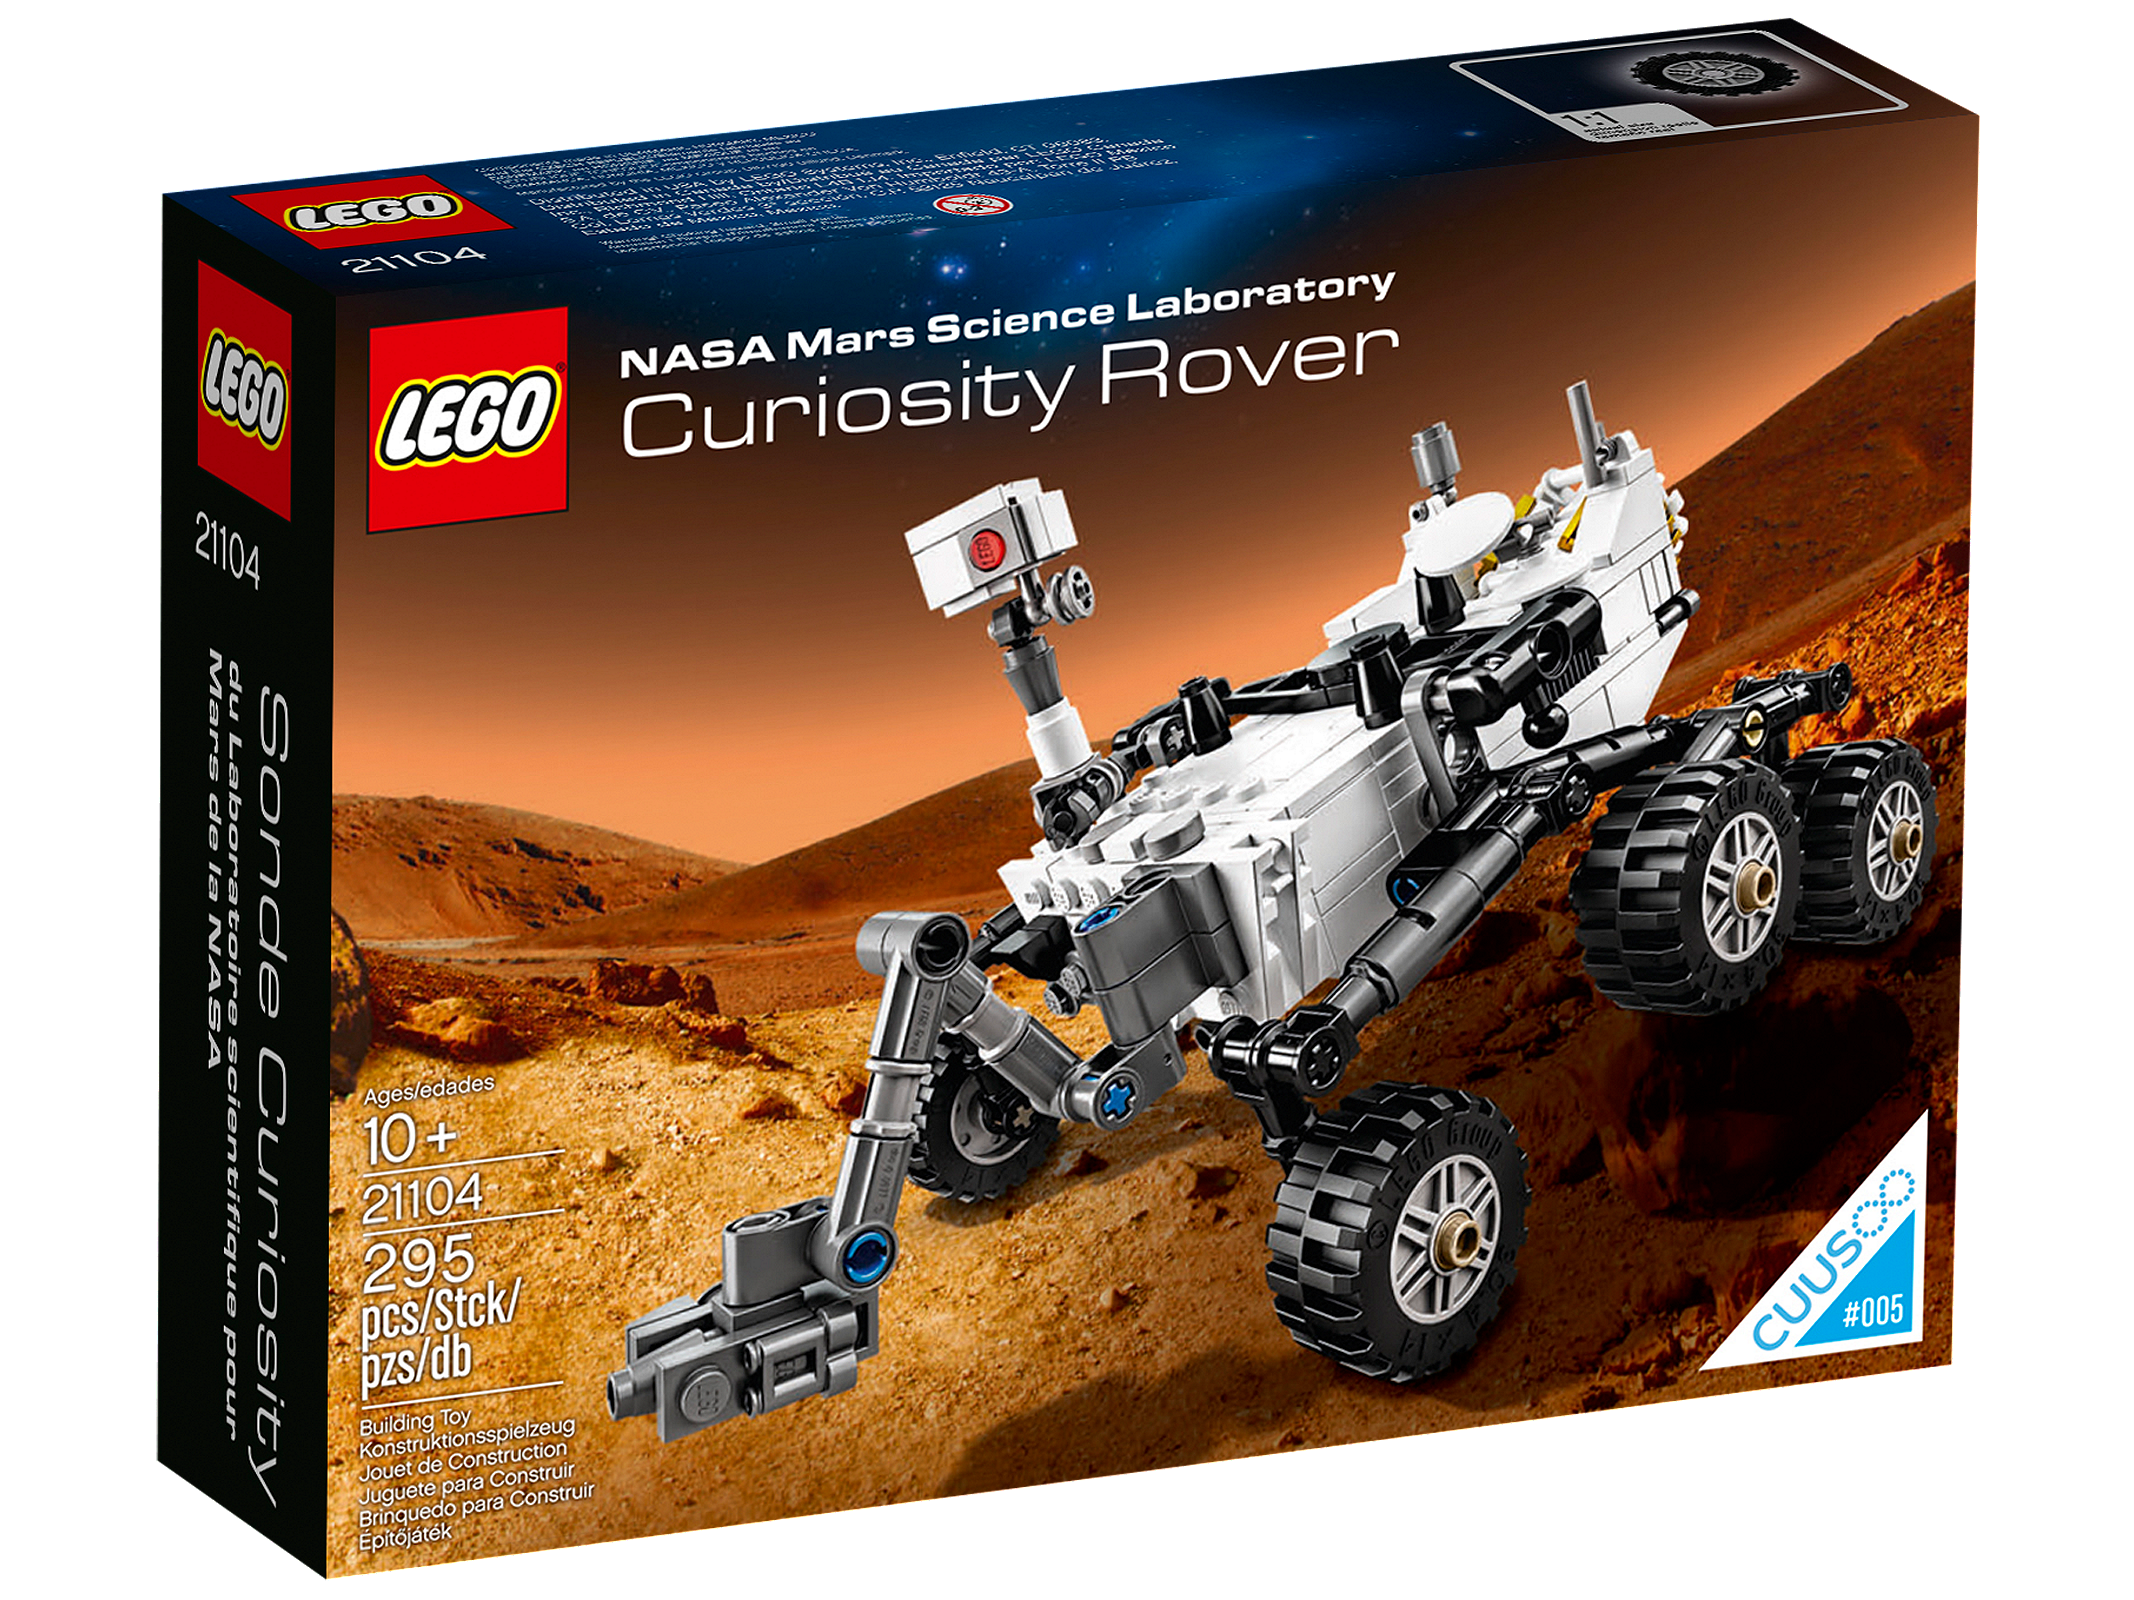 21104 Лего Марсианская научная лаборатория Curiosity Rover / Lego NASA